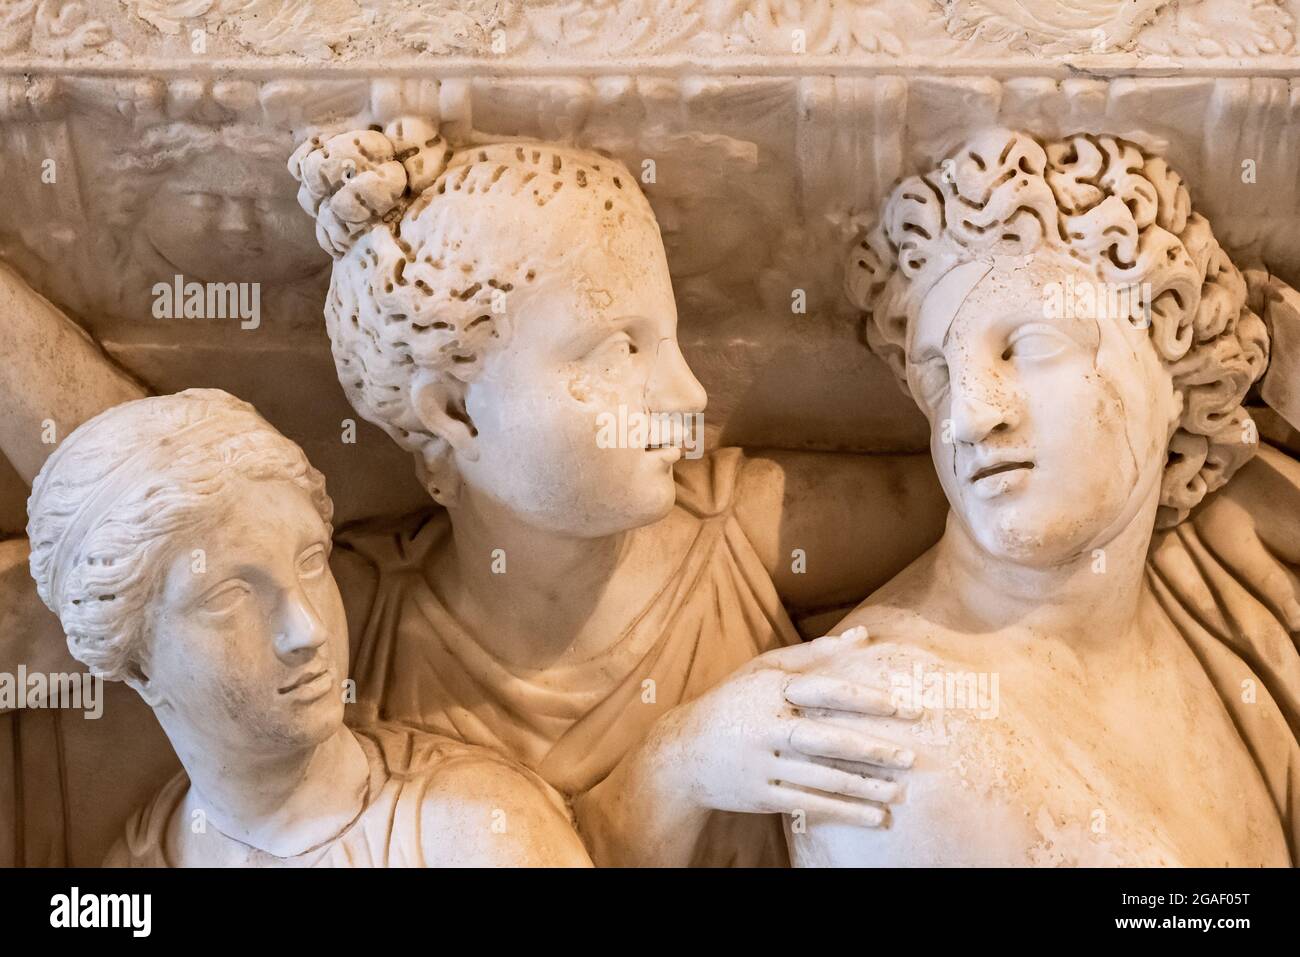 Nahaufnahme von Gesichtern antiker römischer Skulpturen, die auf Marmor geschnitzt wurden Stockfoto